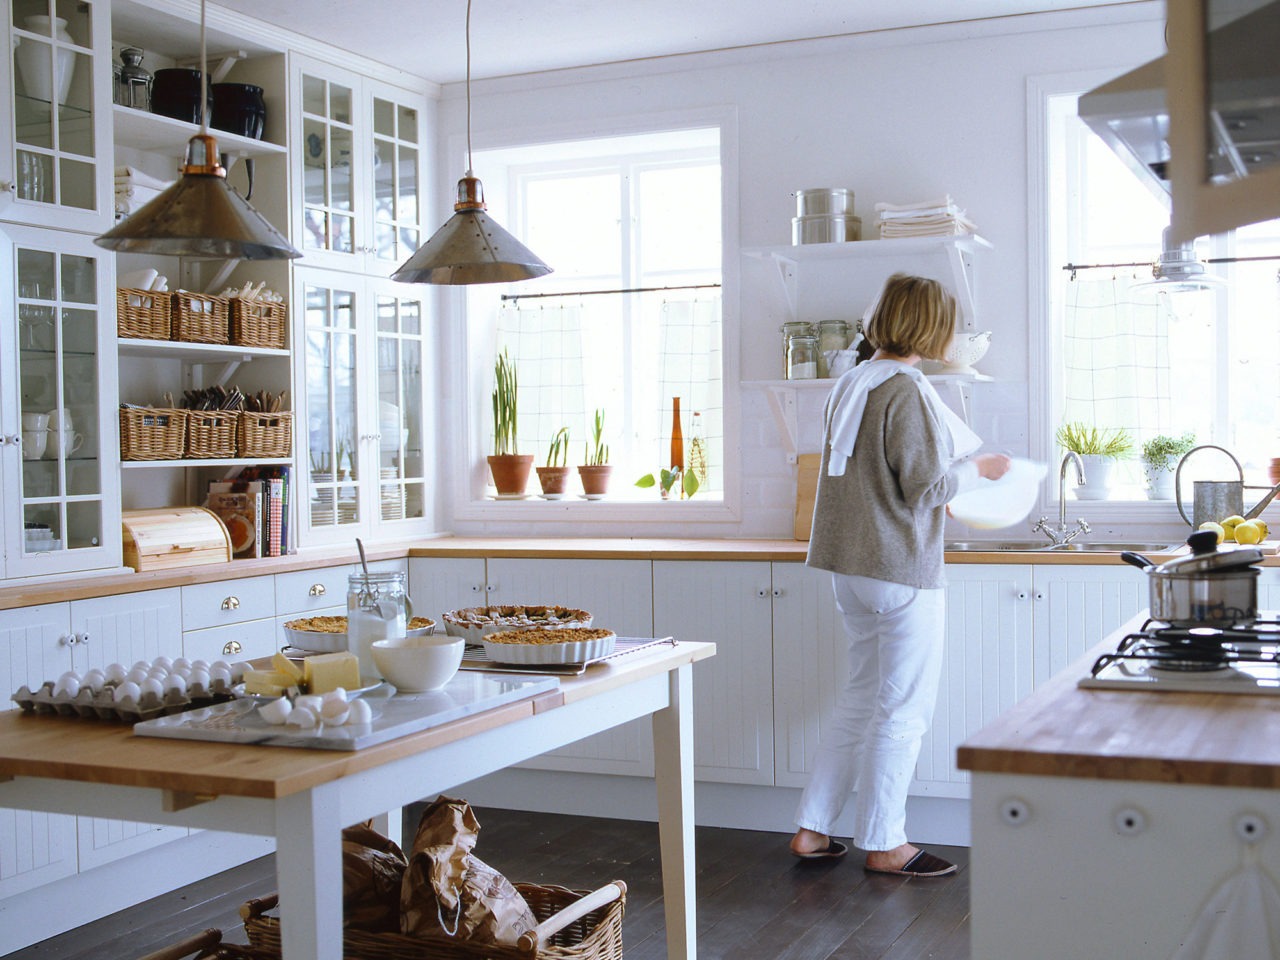 Cuisine avec placards blancs et plan de travail en bois clair. Une femme devant l’évier, tartes maison sur la table.